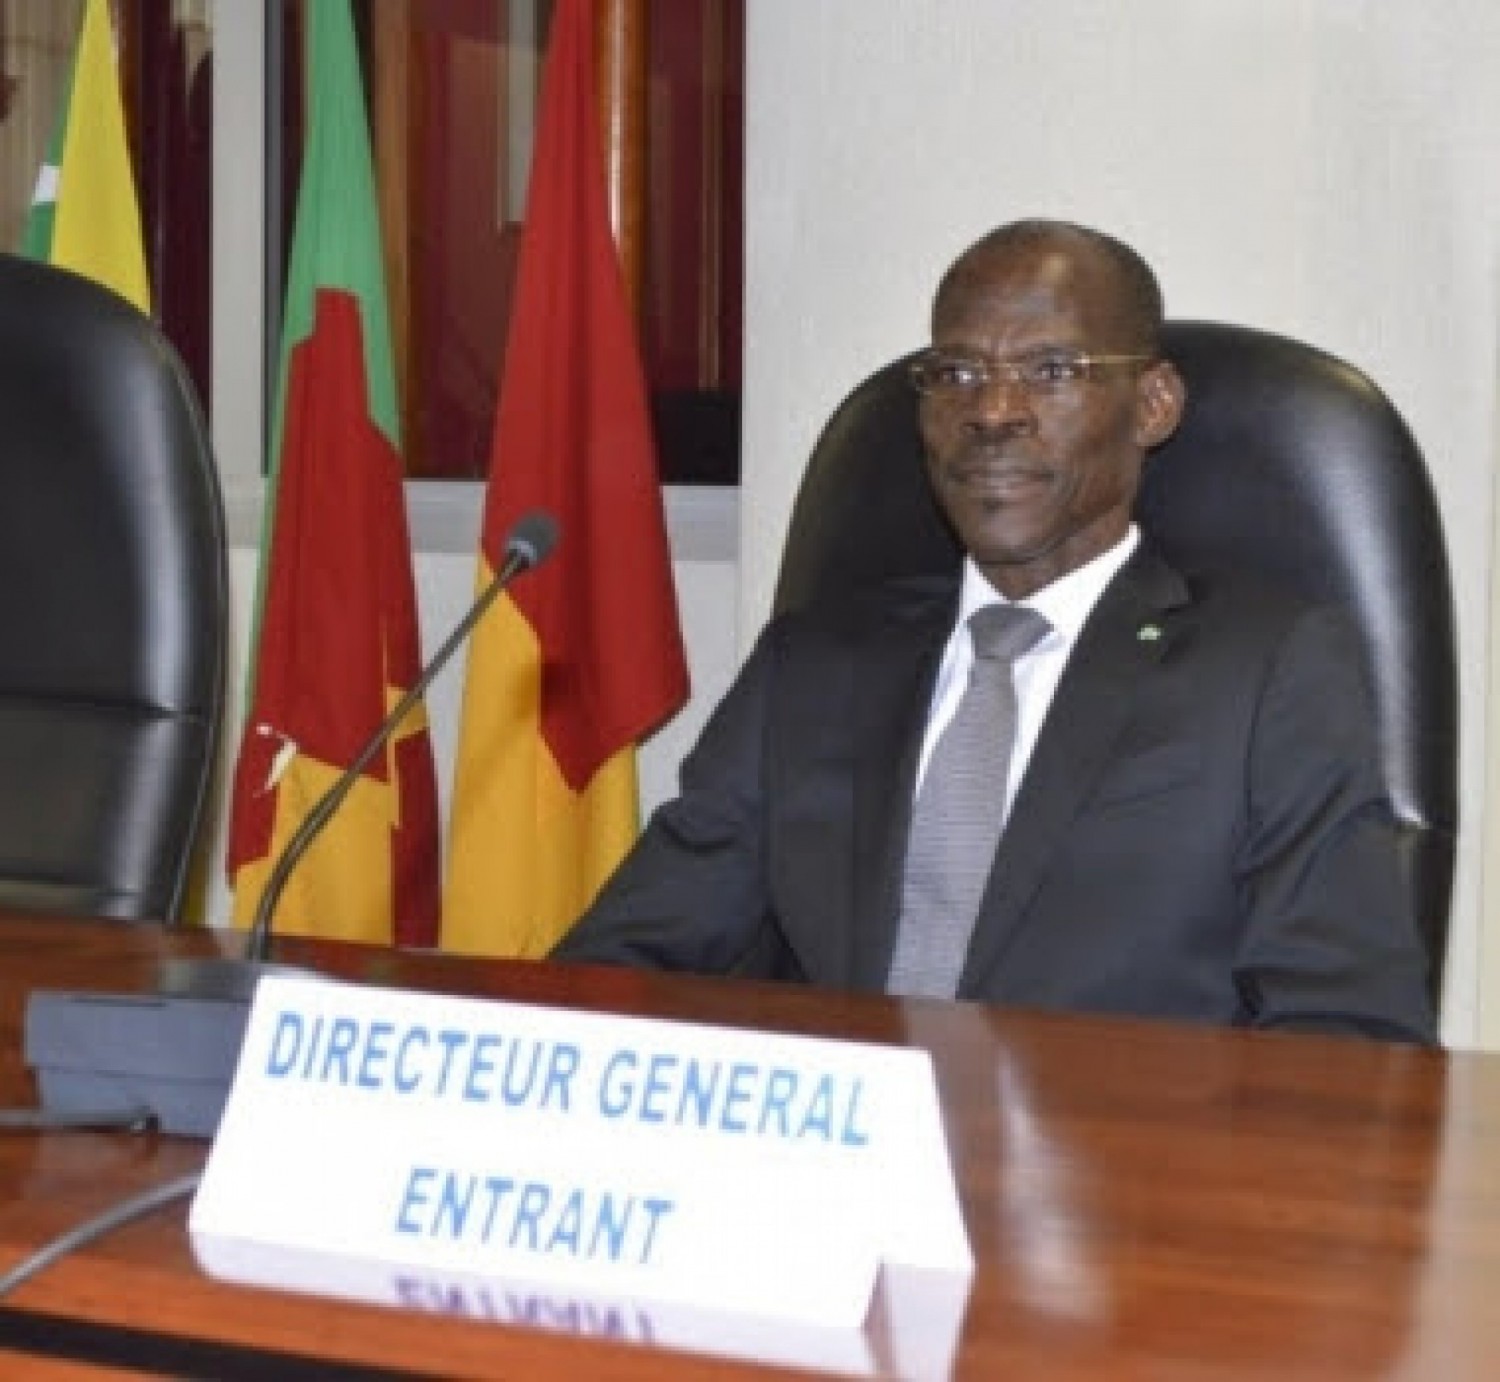 Côte d'Ivoire-Cameroun : OAPI, l'ivoirien Bohoussou Loukou suspendu de ses fonctions de Directeur General, les raisons évoquées